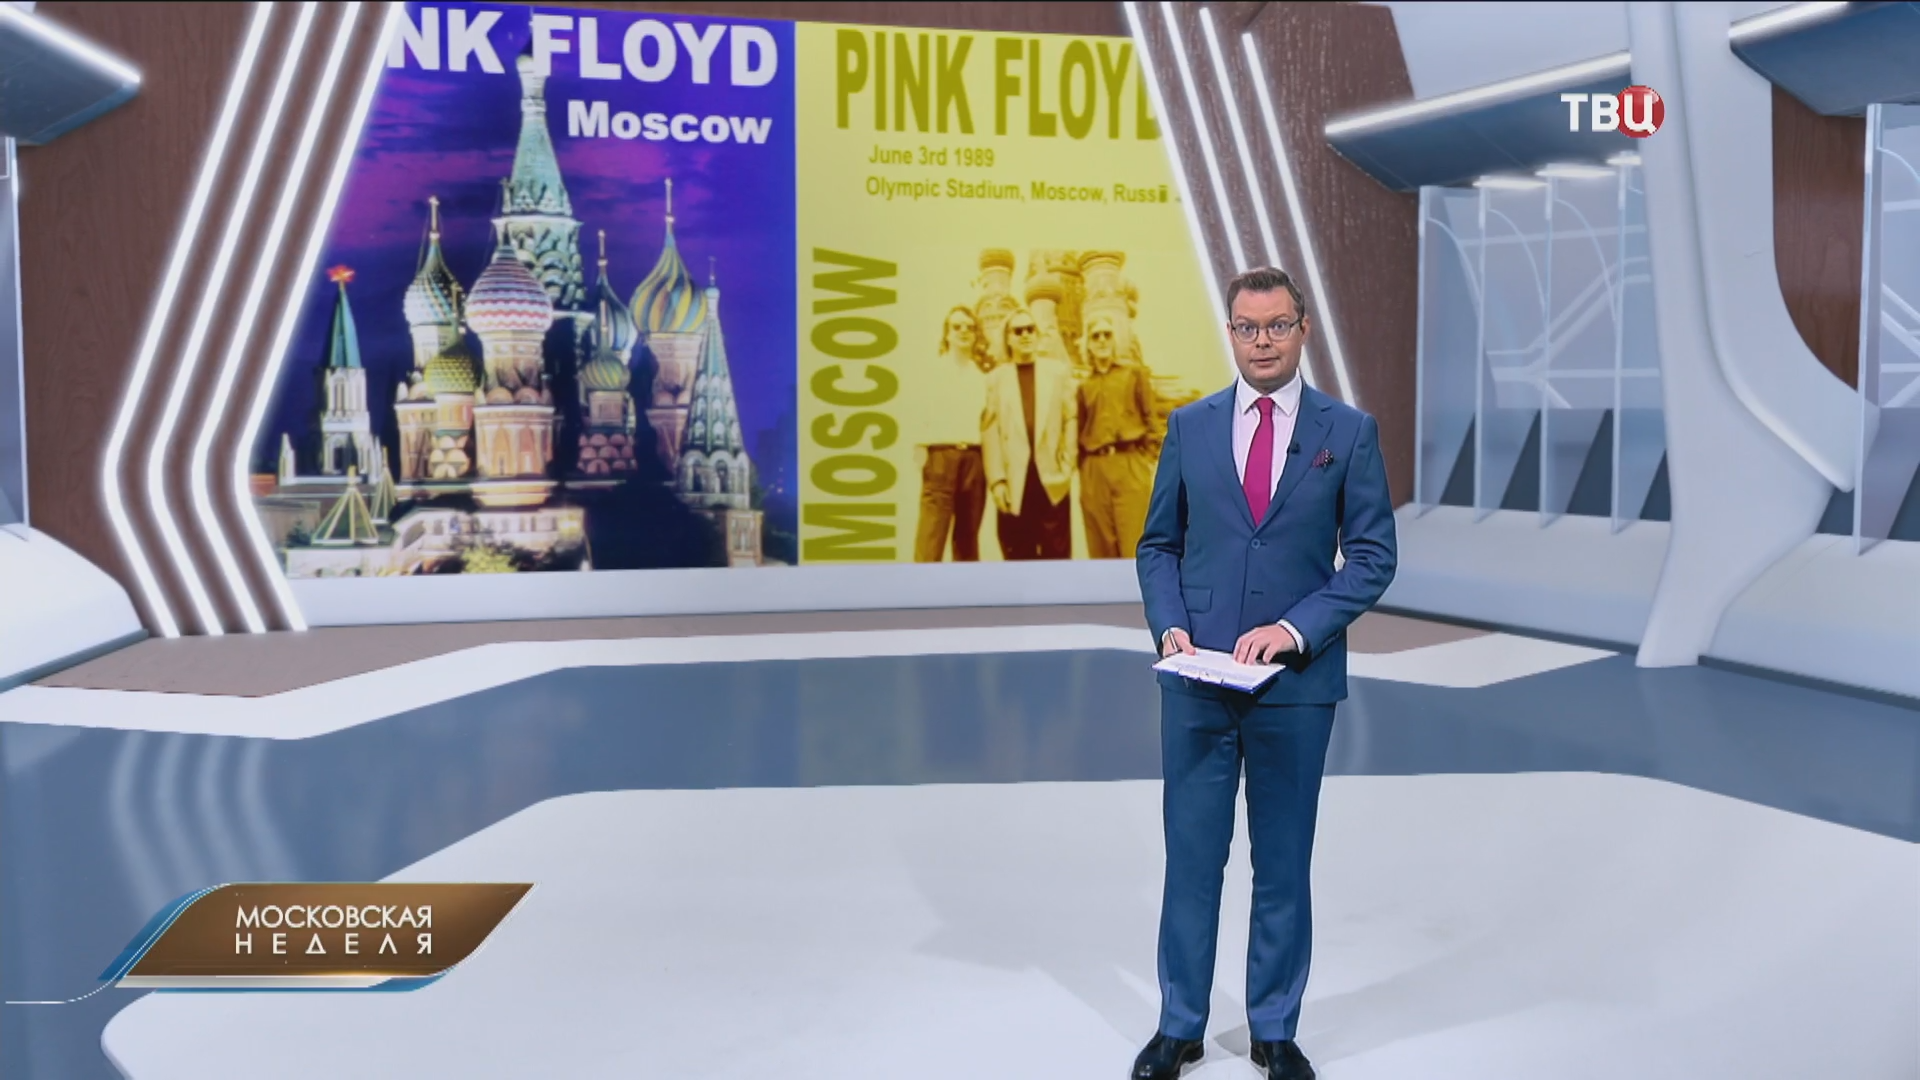 Шок и мурашки: 35 лет концерту Pink Floyd в Москве / События на ТВЦ